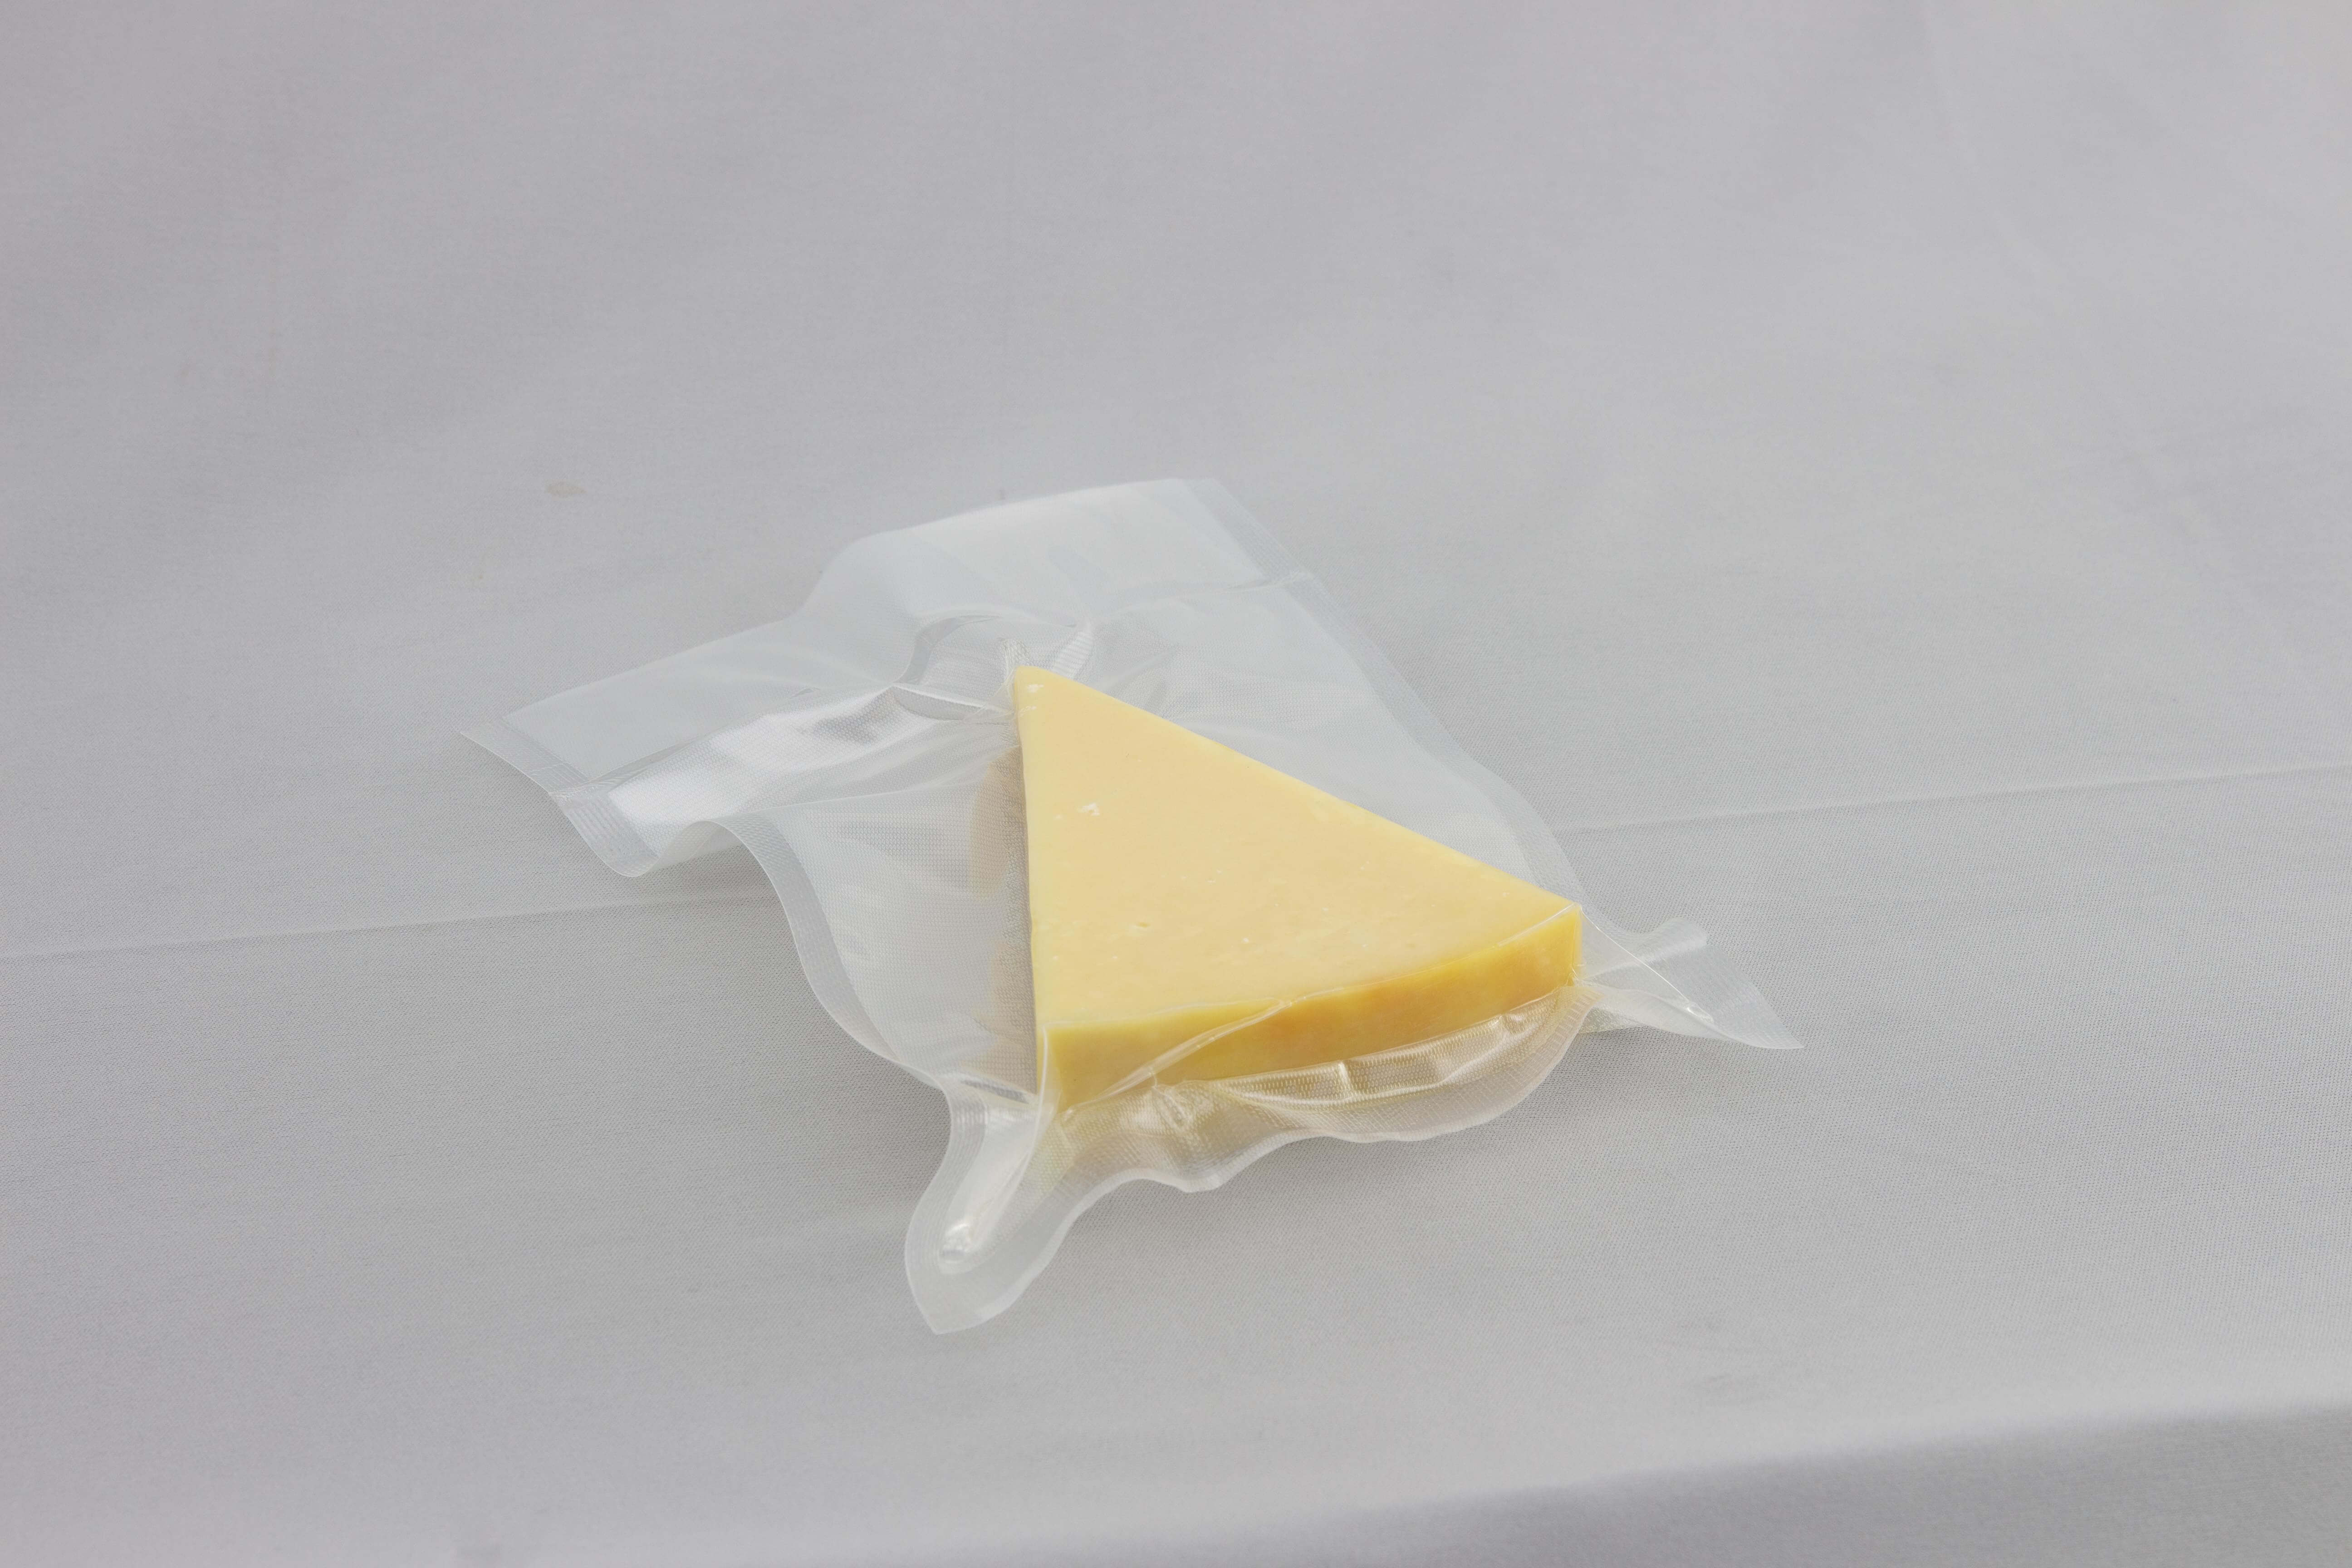 Registros da nova Embalagem a Vácuo Gofrada Transparente da Cetro, detalhes de seu acabamento com queijos, bacon e aspargos